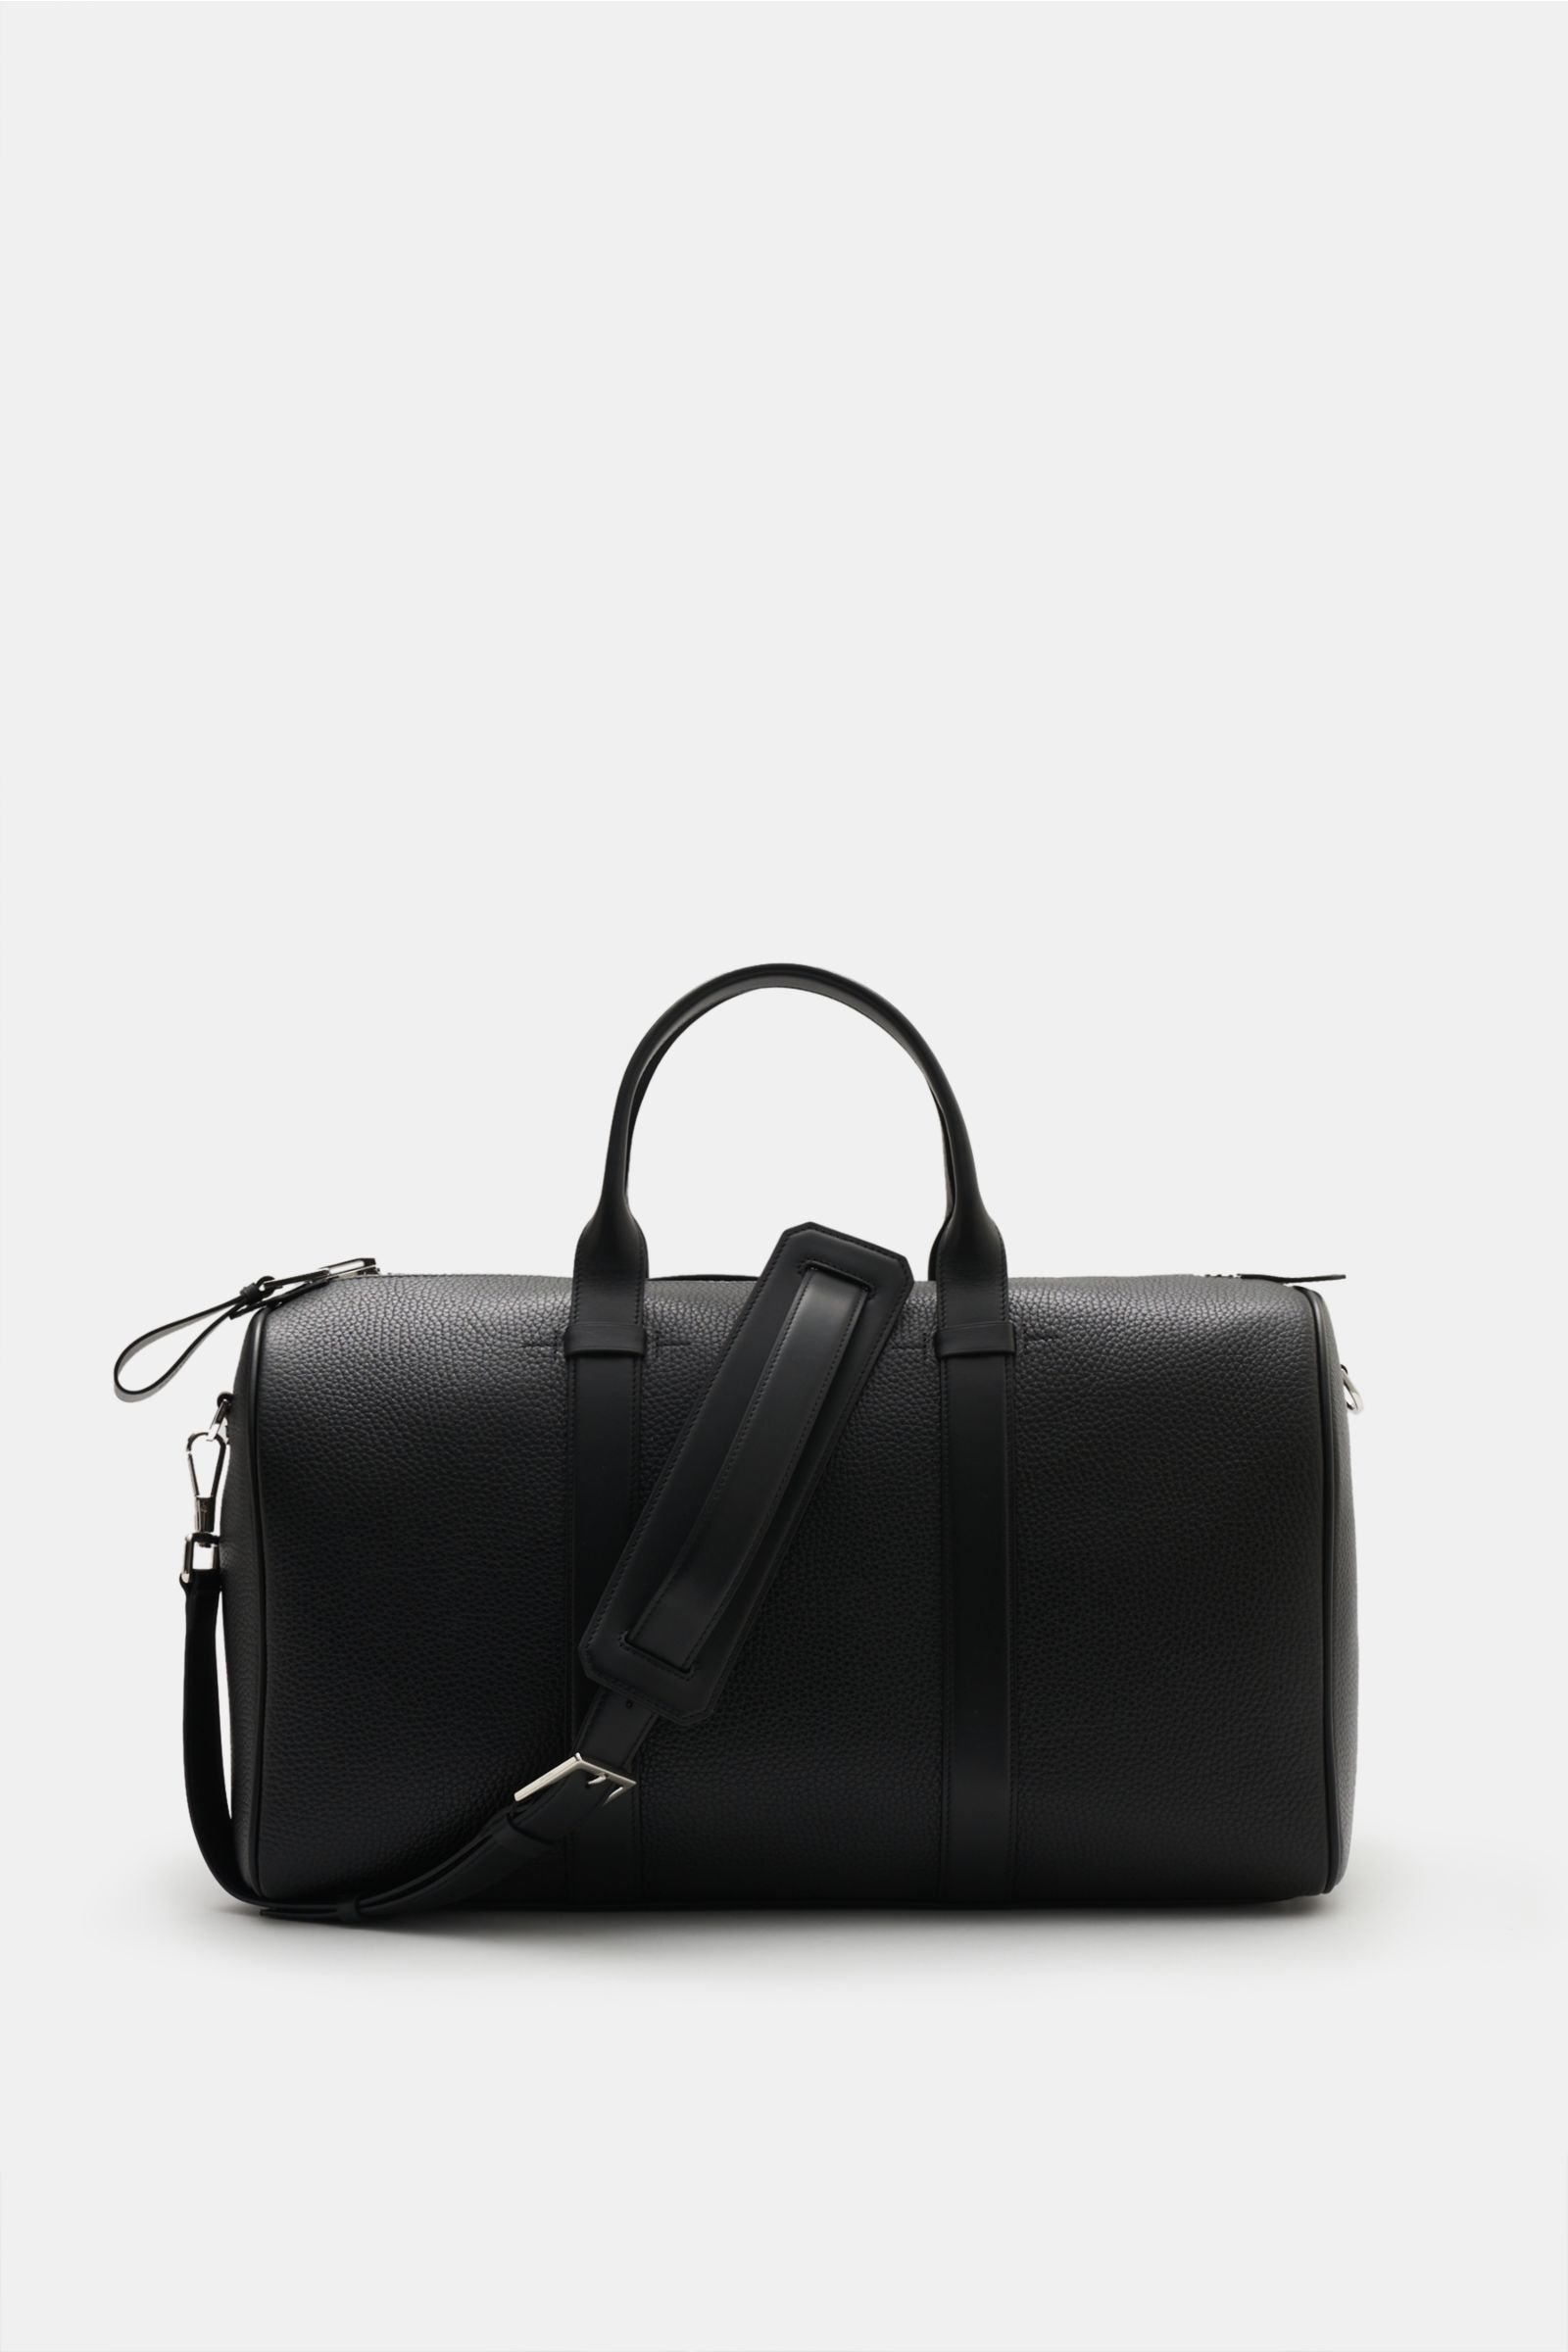 Reisetasche schwarz (Größe M)